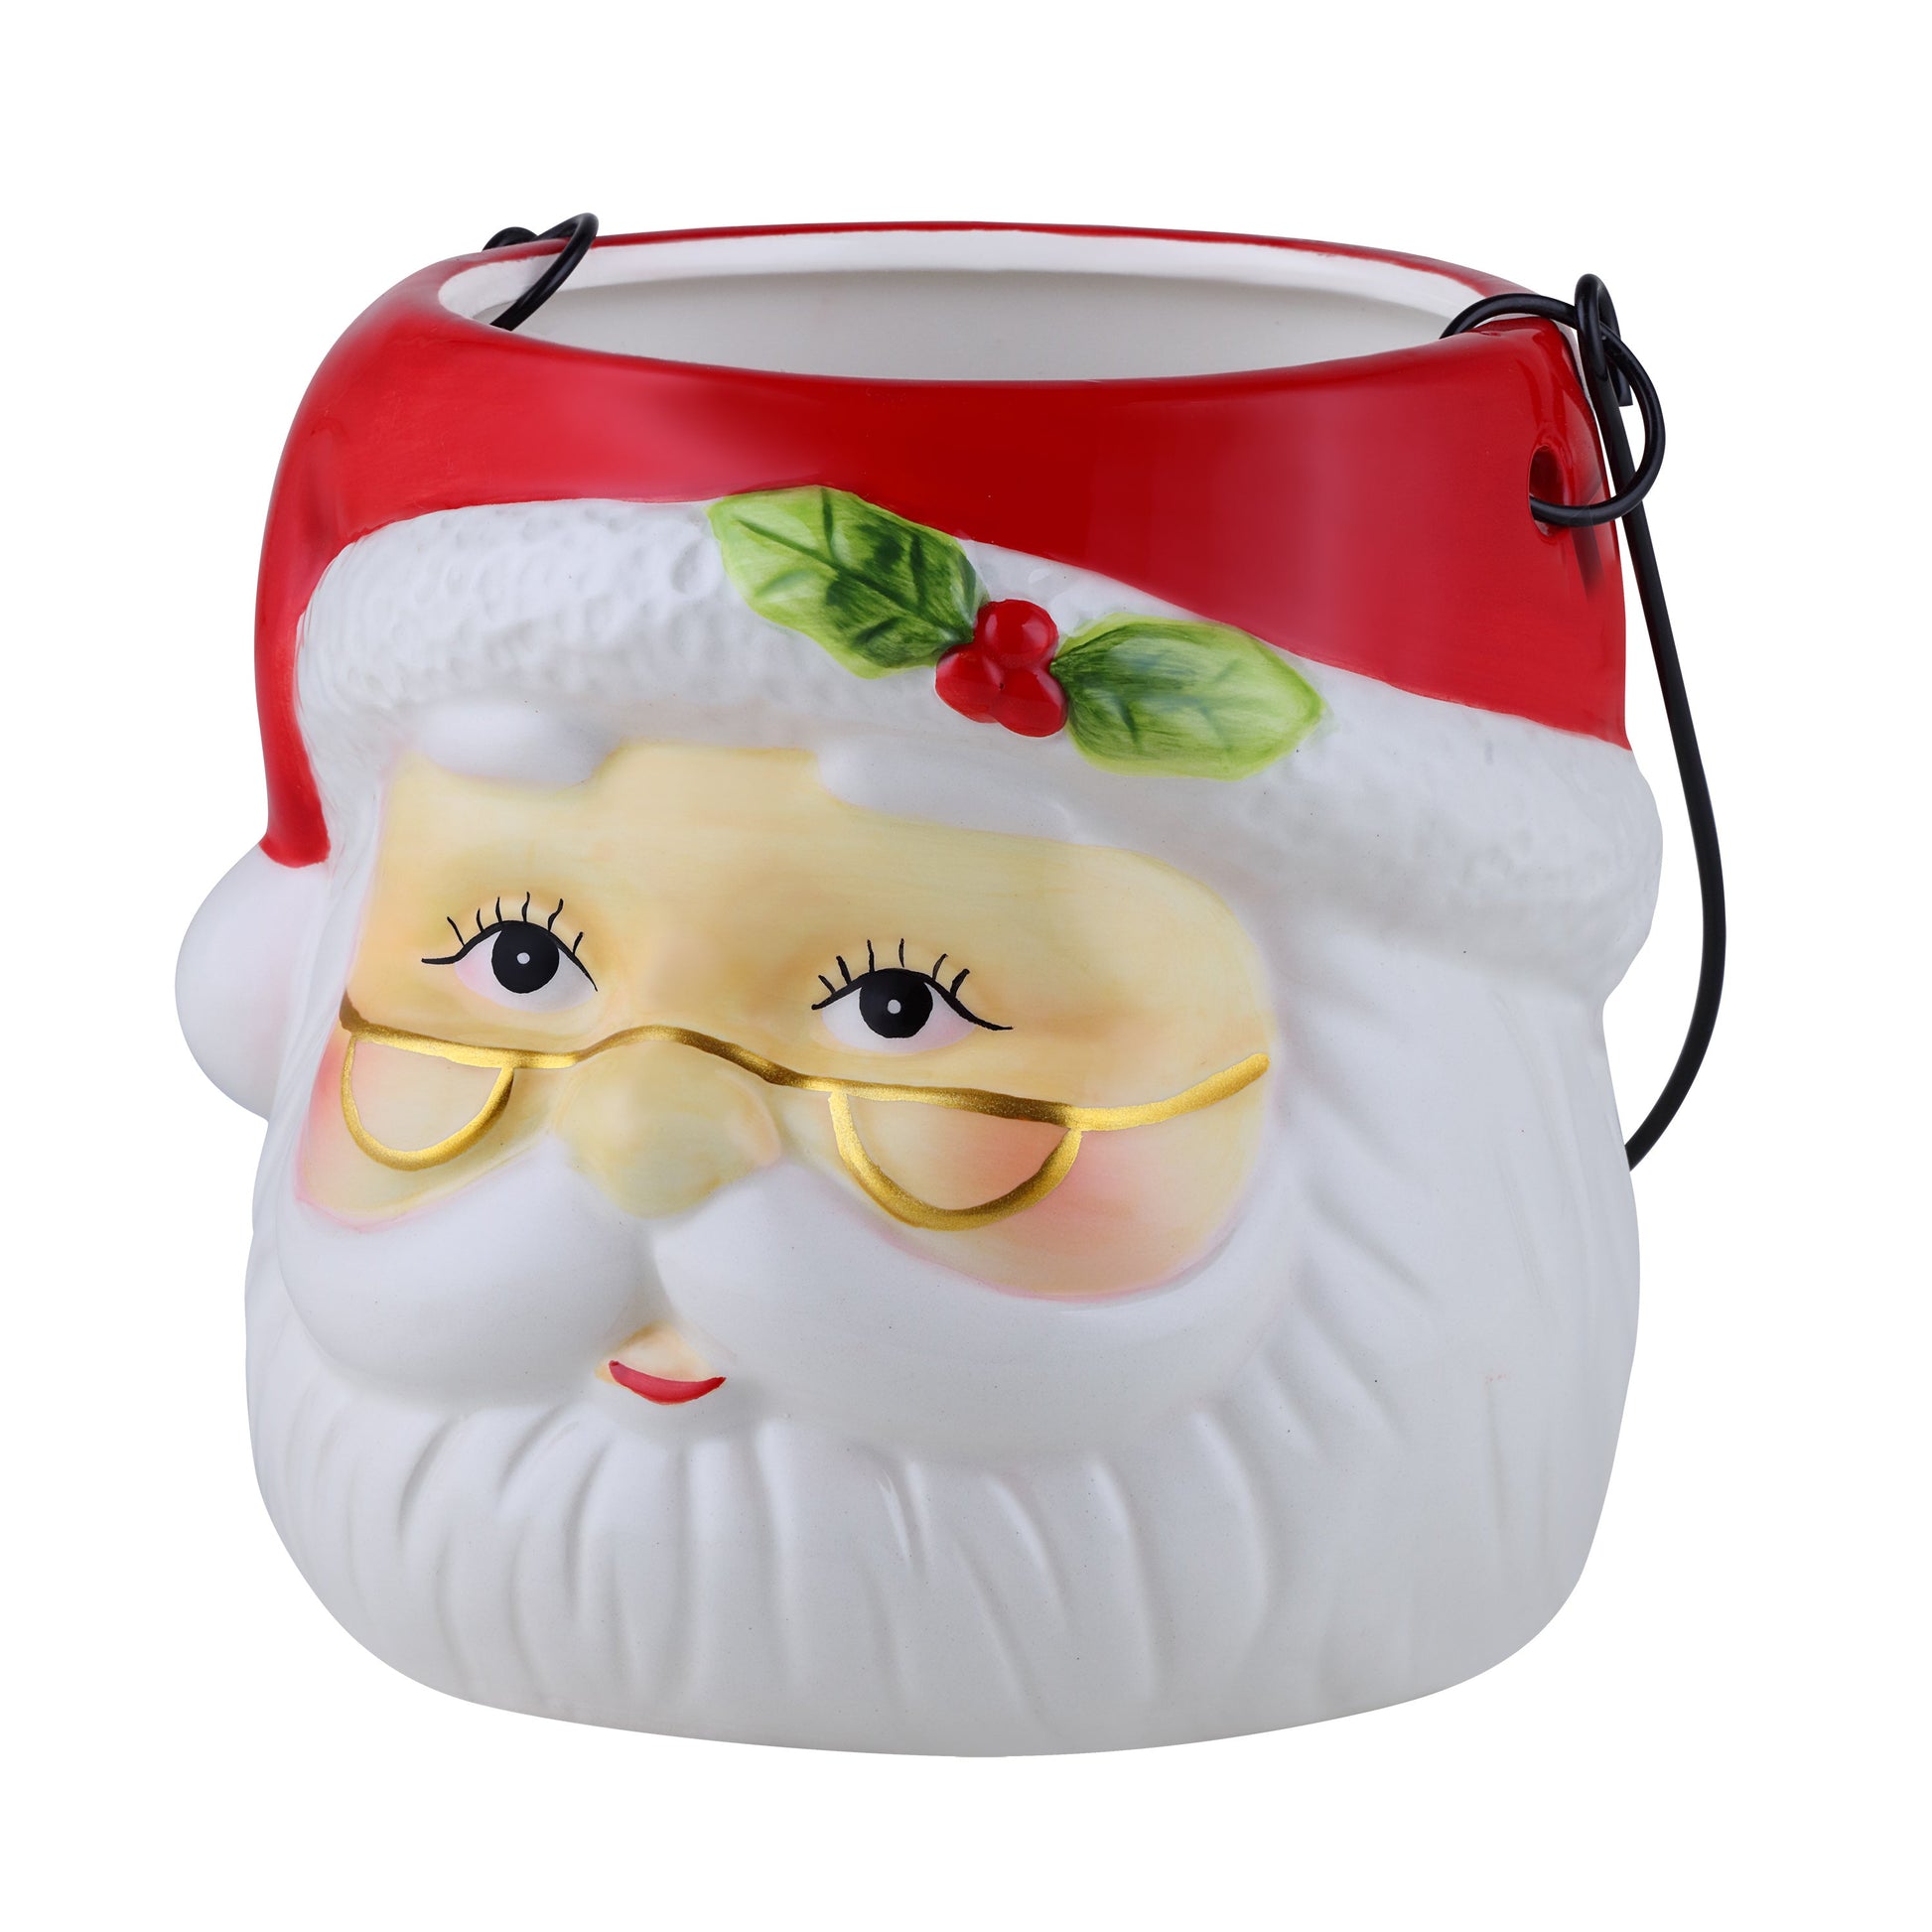 5" Nostalgic Ceramic Container - Santa Claus - Mr. Christmas